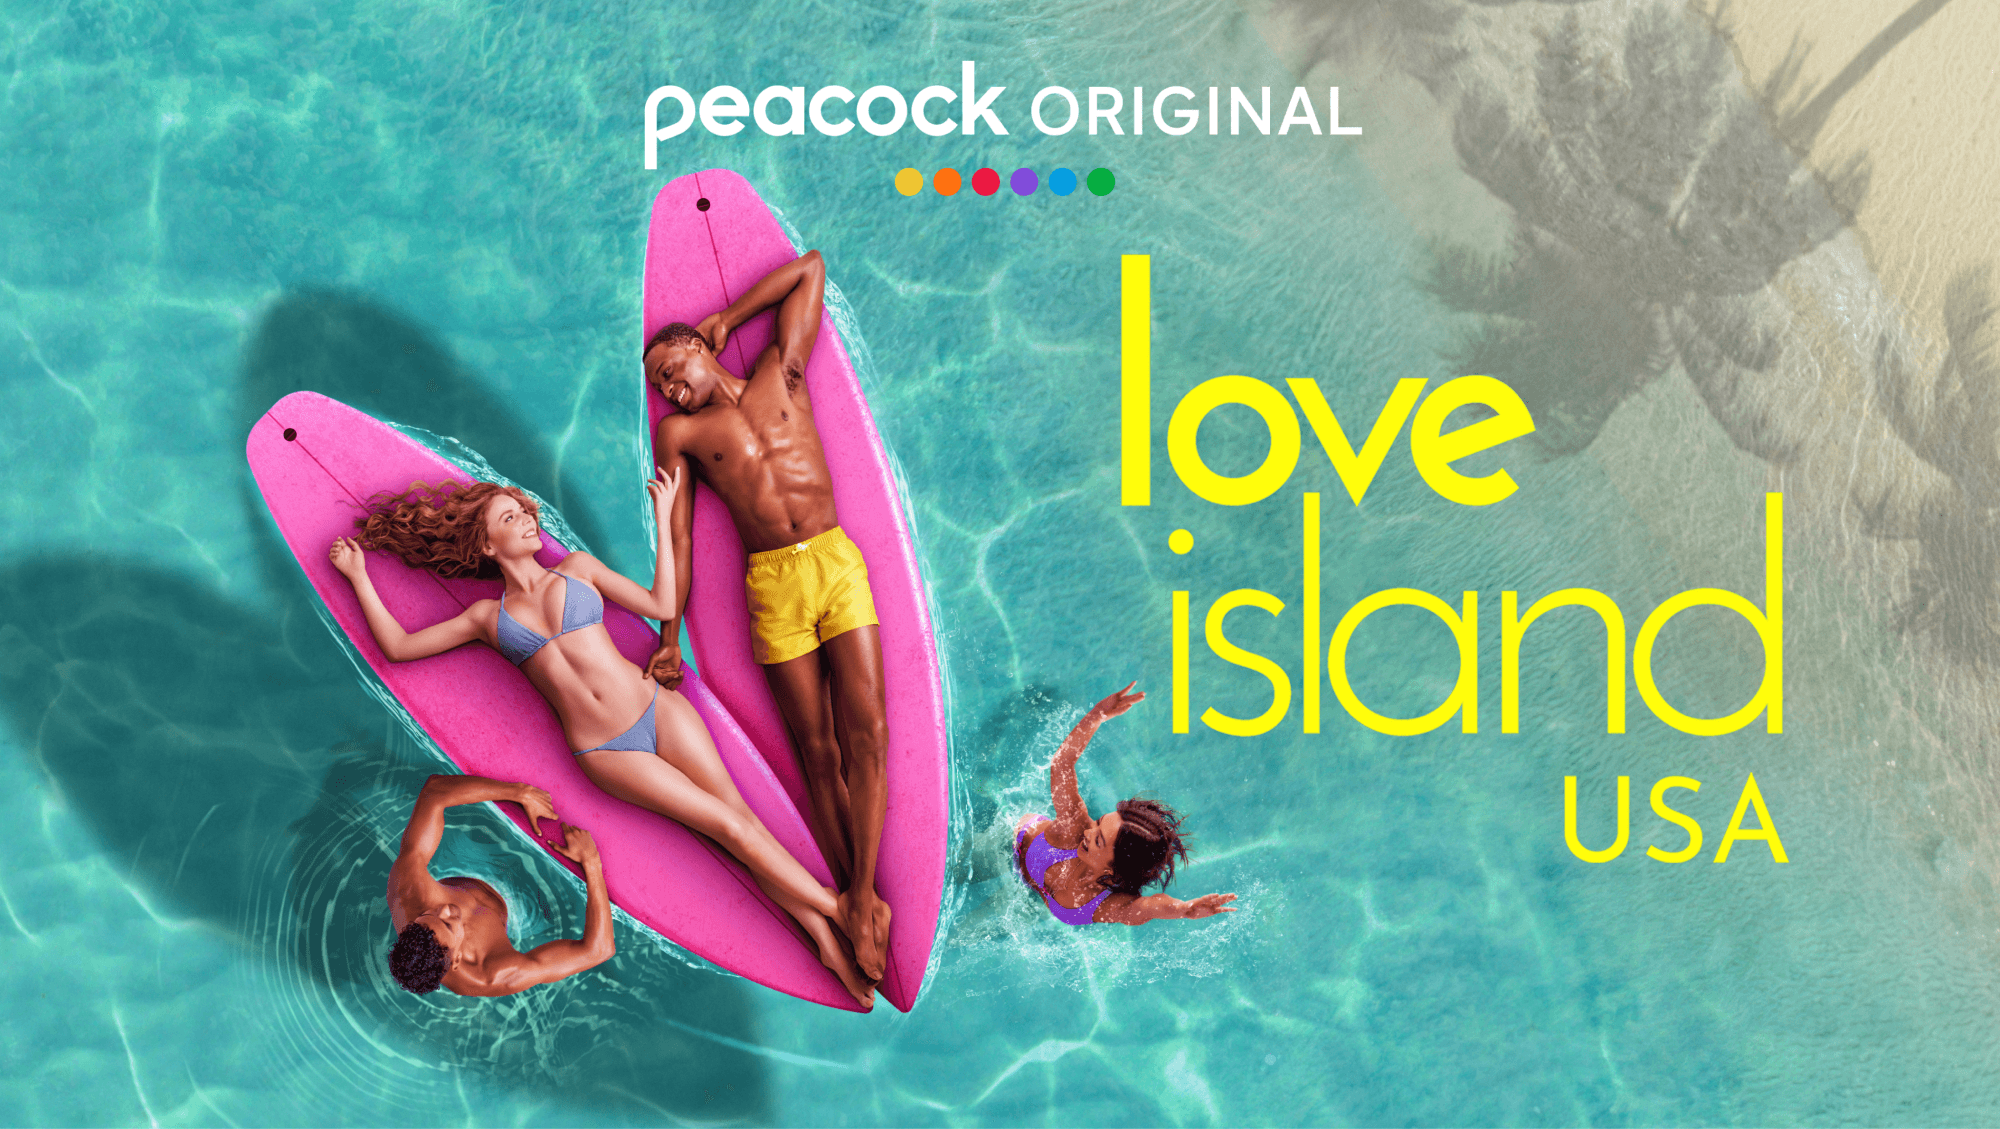 Love Island USA - Mobile.png